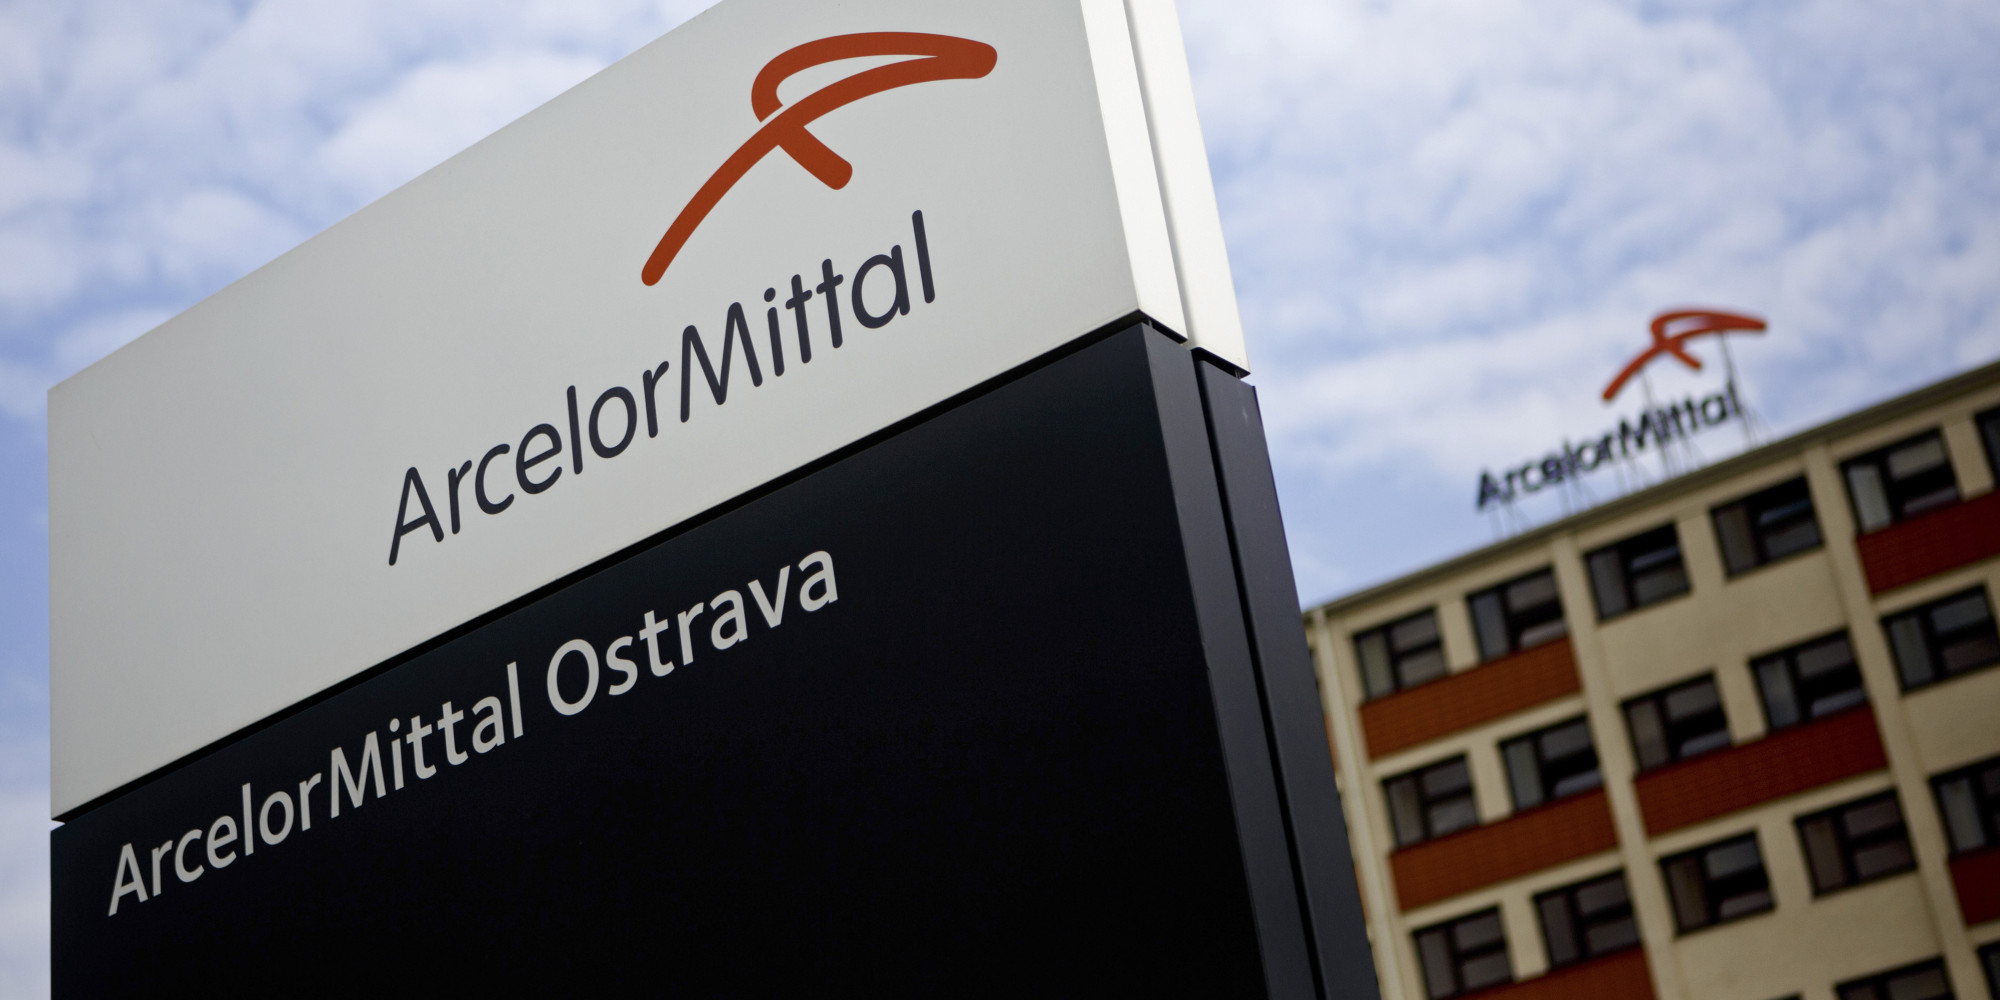 ArcelorMittal sube ligeramente en el Ibex 35 tras anunciar que parará la acería de Gijón cinco días 